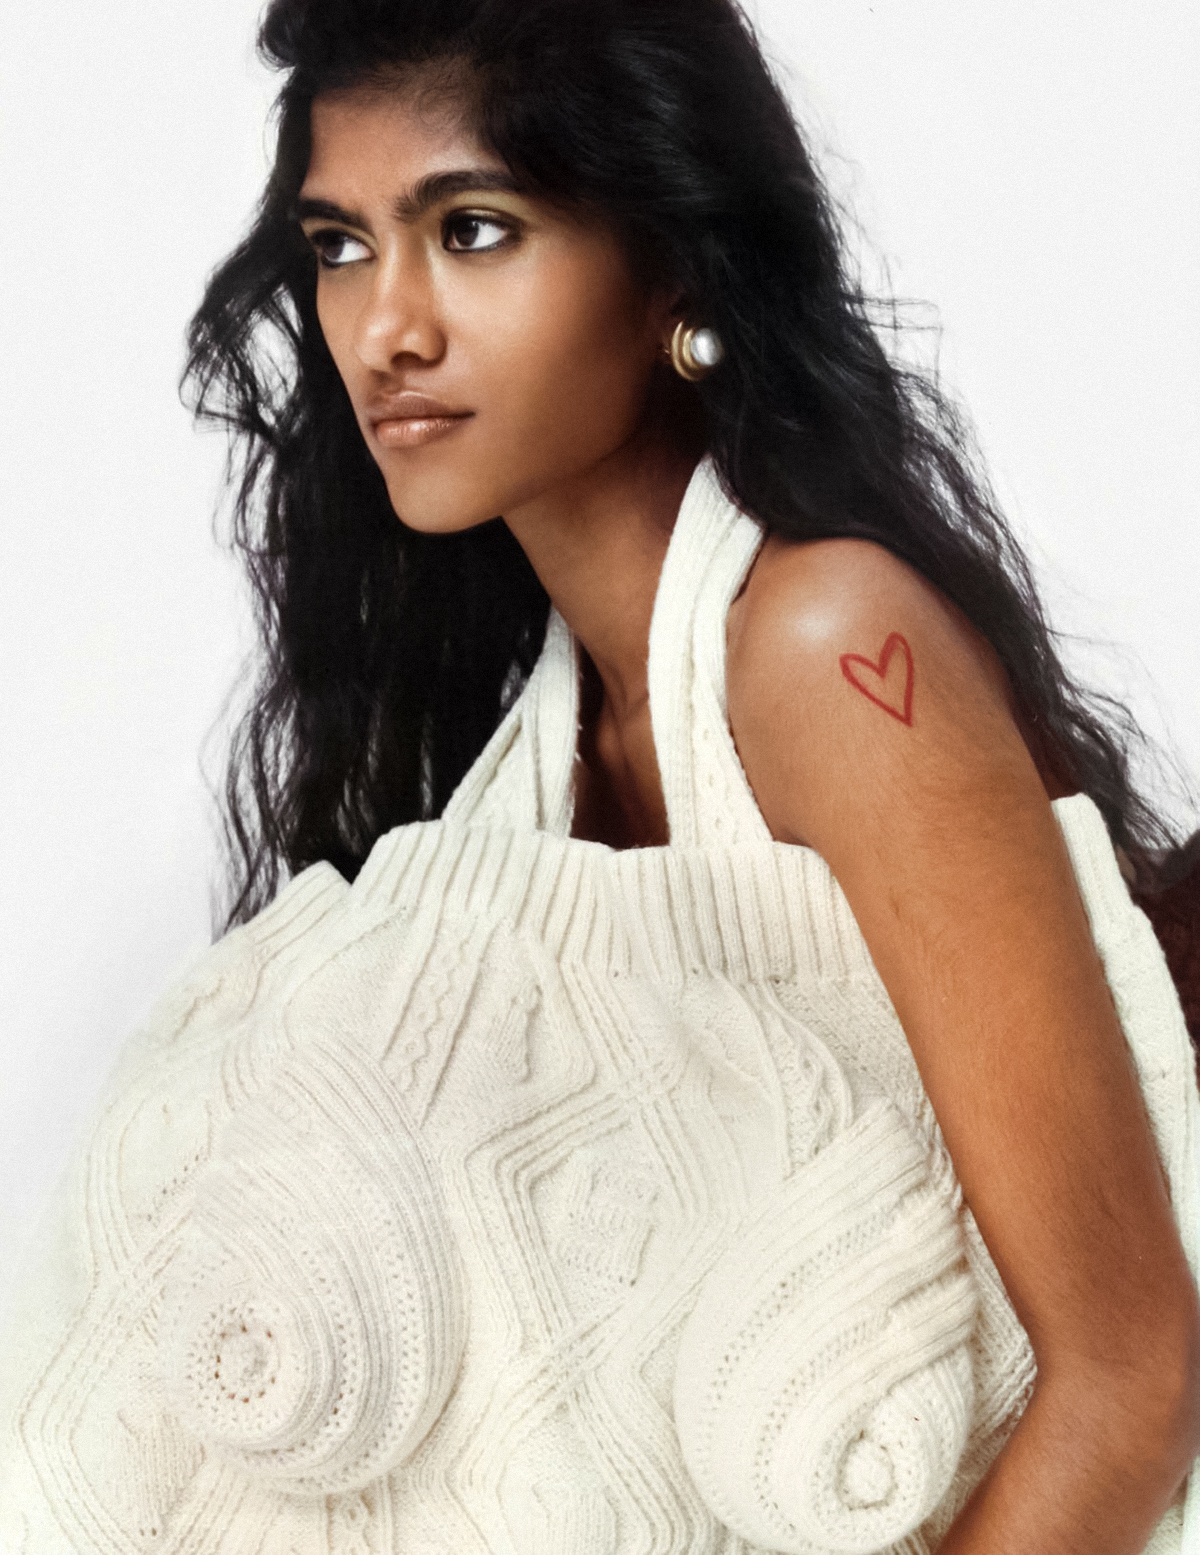 Ashley Radjarame by Fabien Vilrus for Vogue India September 2021